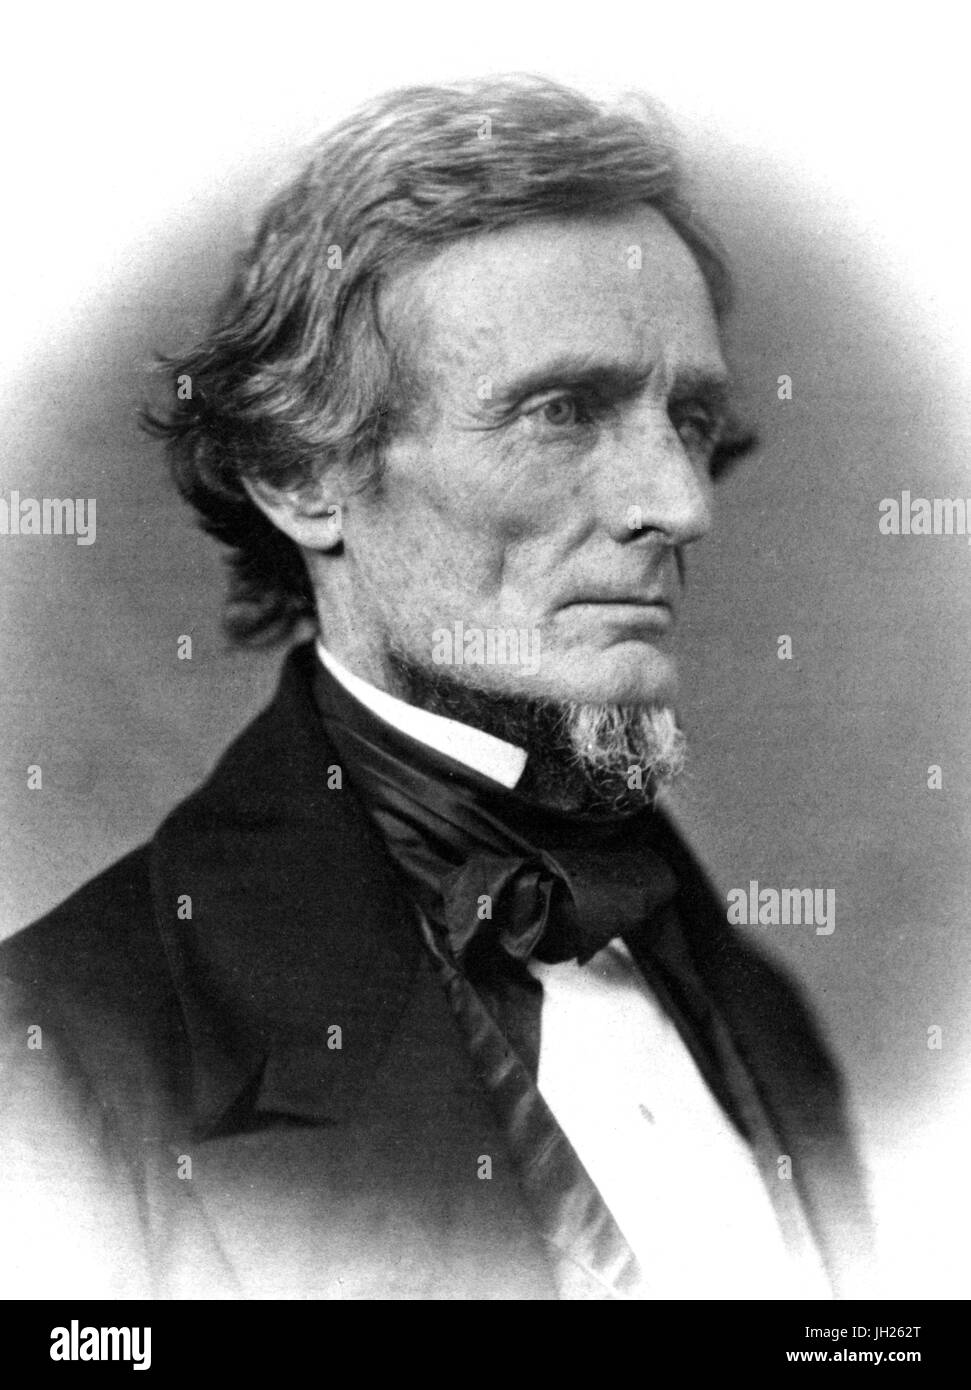 JEFFERSON DAVIS (1808 – 1889) als Präsident der Konföderierten Staaten von Amerika im Jahre 1861. Foto: Matthew Brady Stockfoto